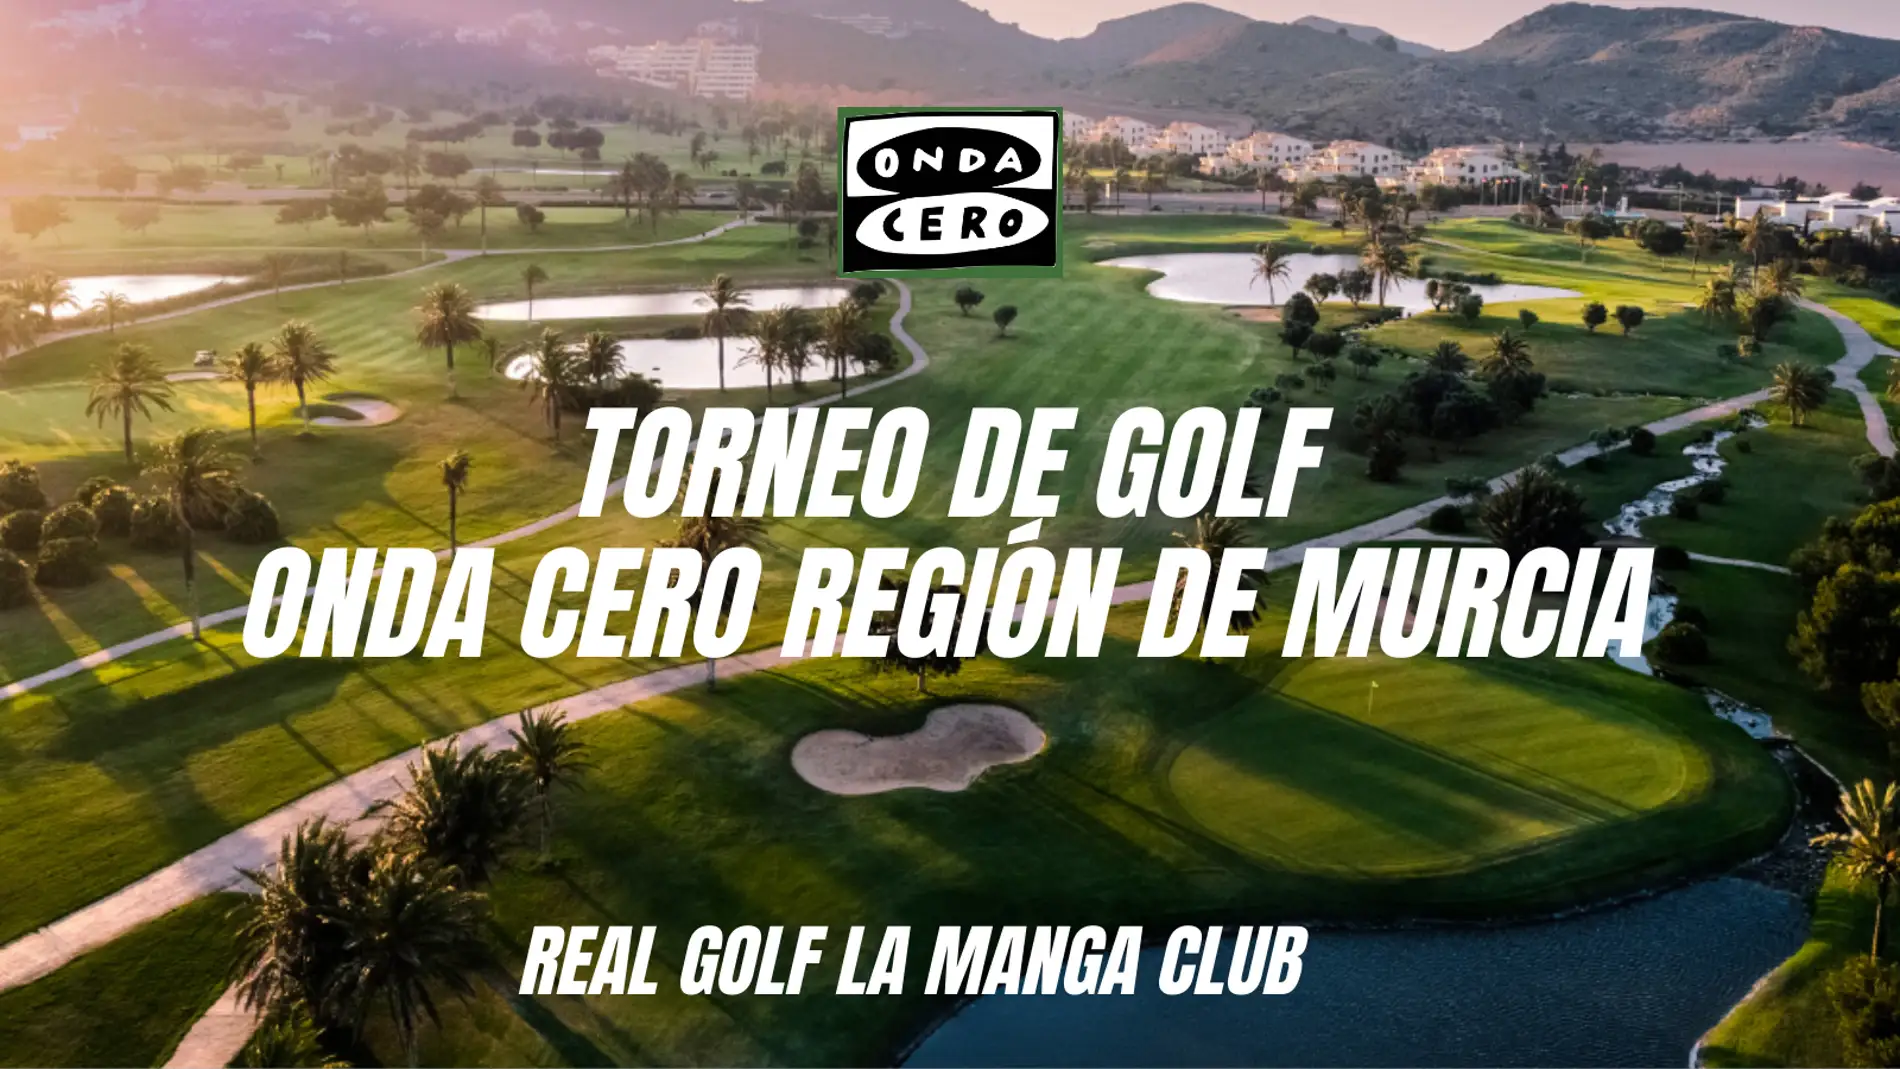 La Manga Club acoge el torneo de golf Onda Cero Región de Murcia